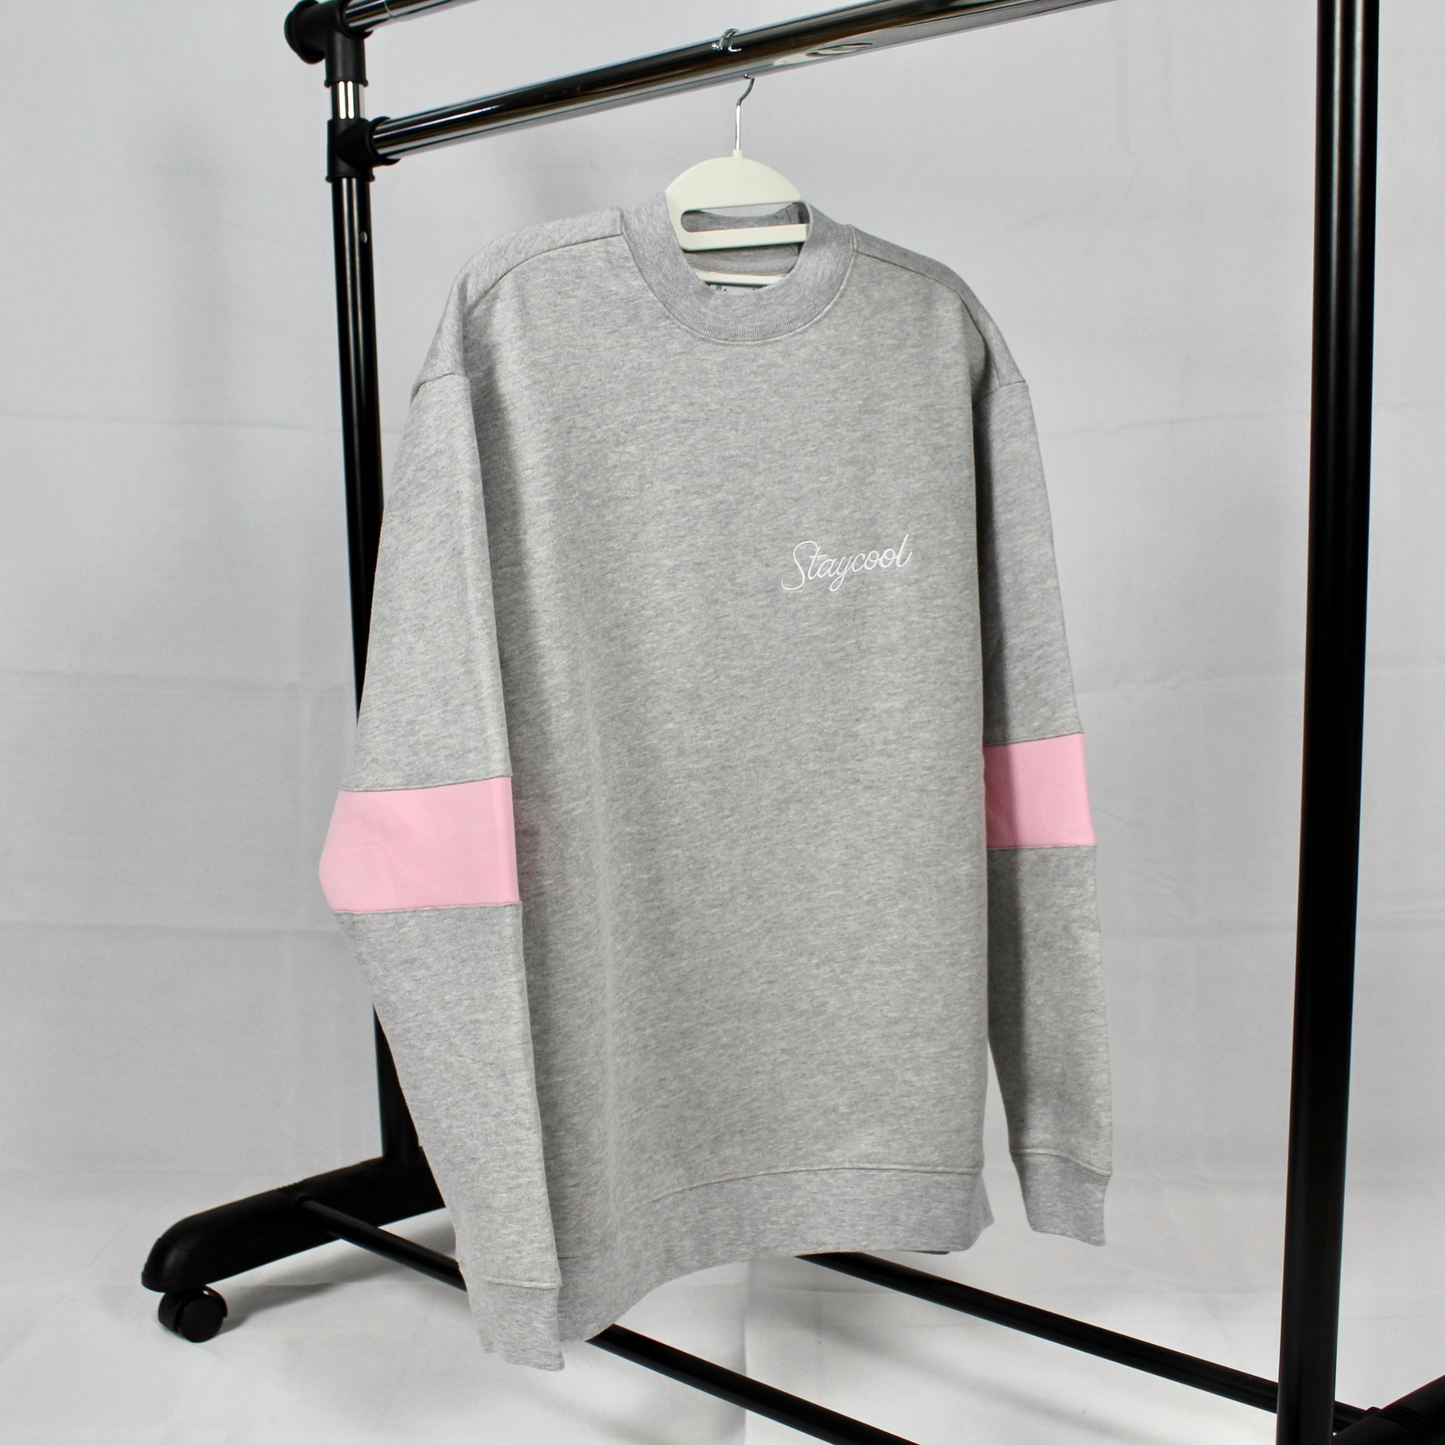 Staycoolnyc Collegiate Sweatshirt (Grey/Pink)